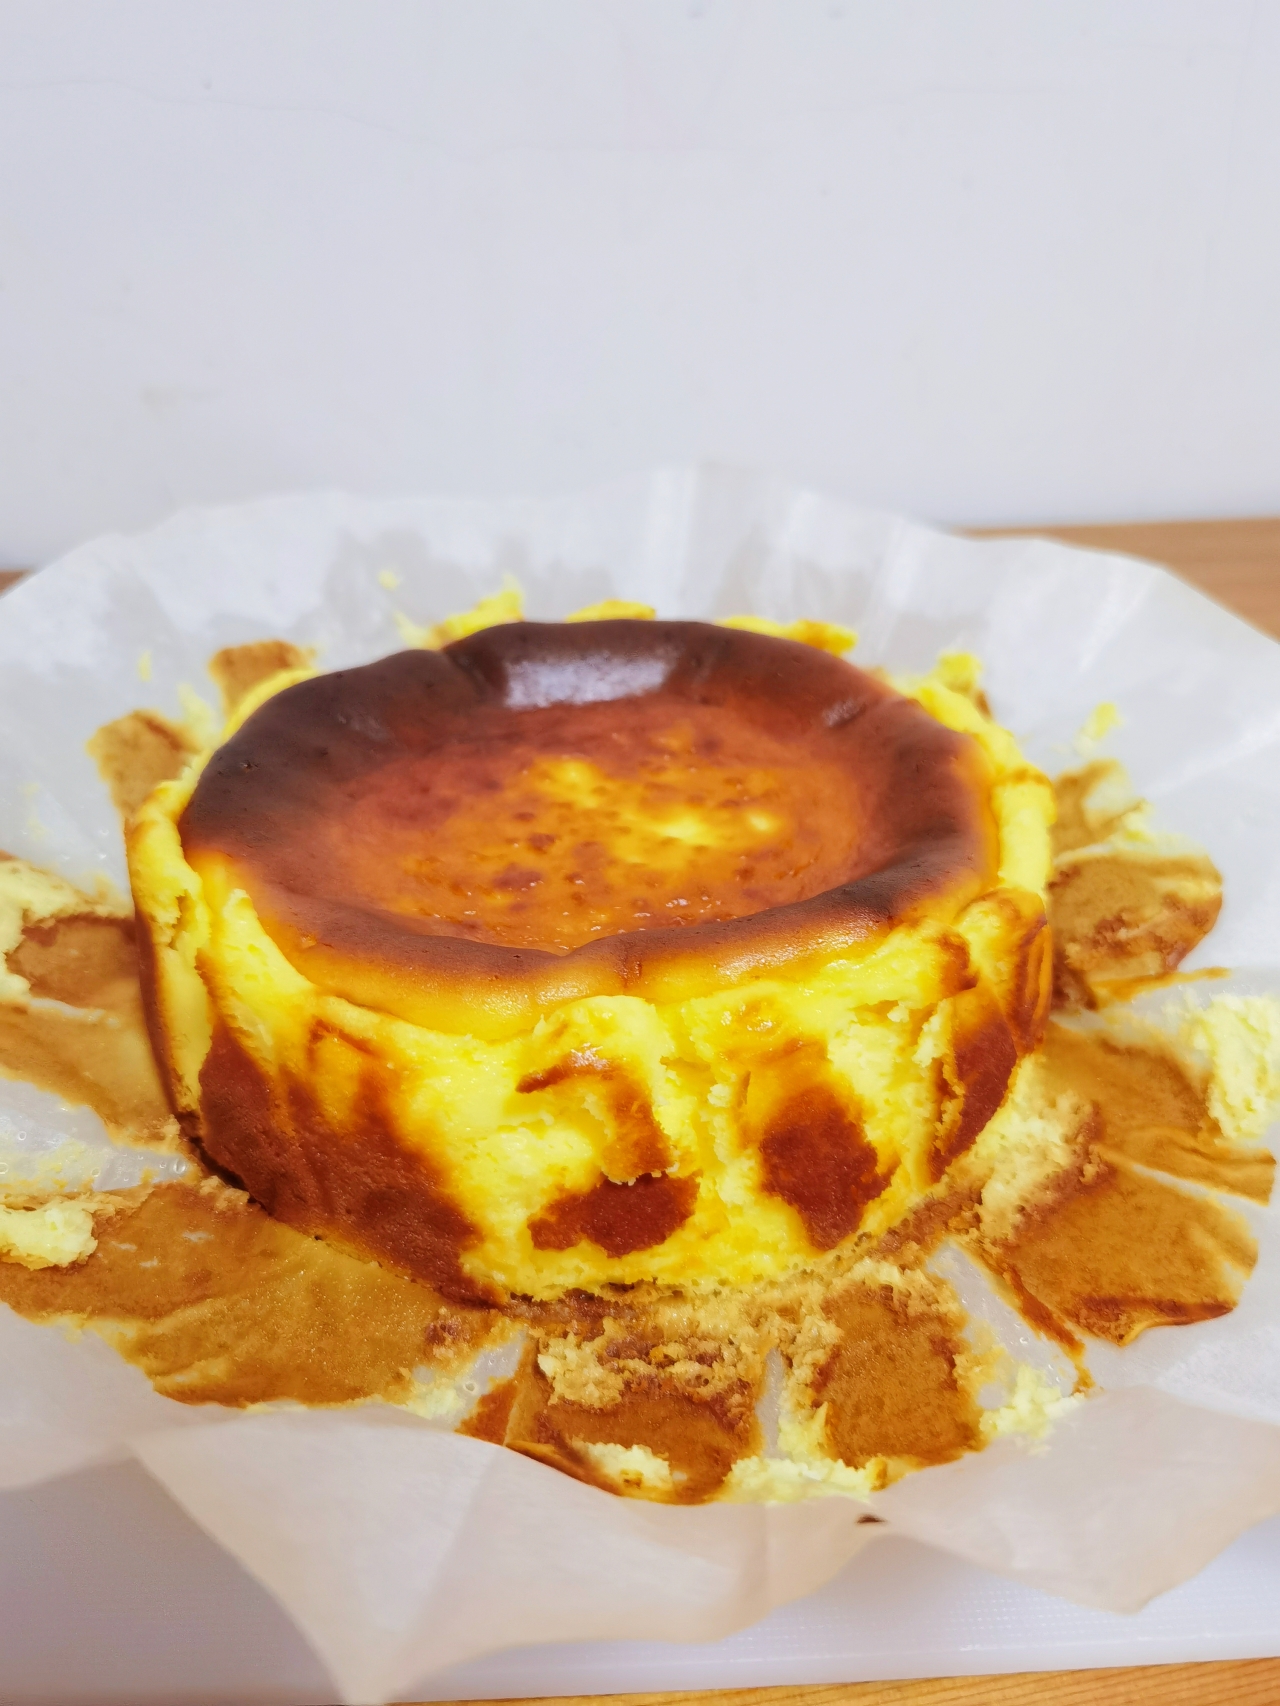 柠檬巴斯克芝士蛋糕    Basque cheesecake